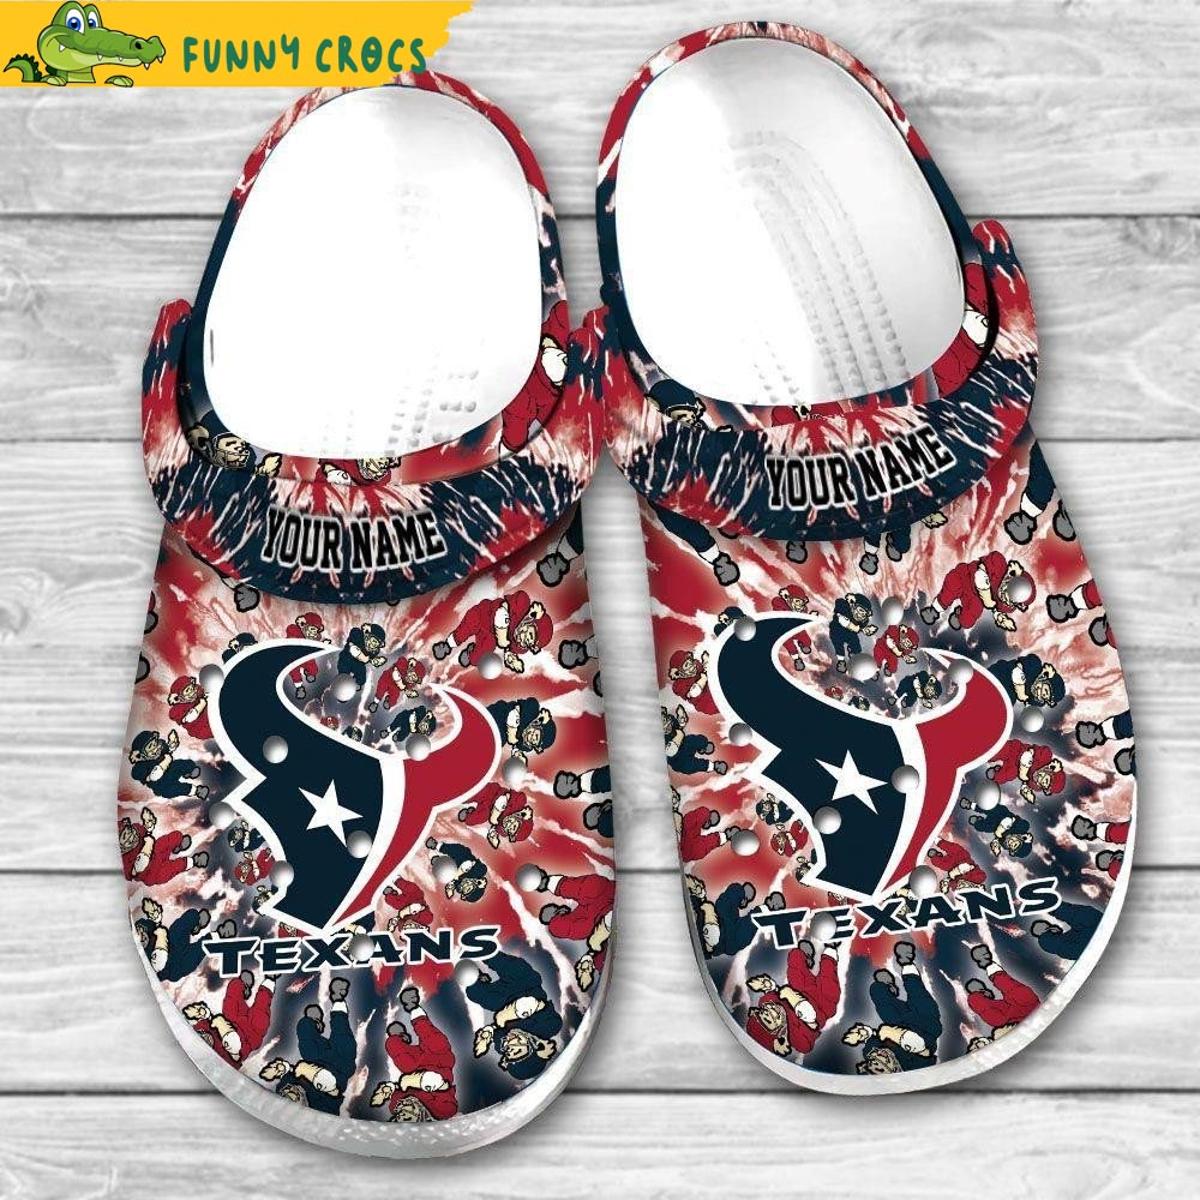 Houston Texans Grateful Dead Crocs Shoes, Crocs Shoes